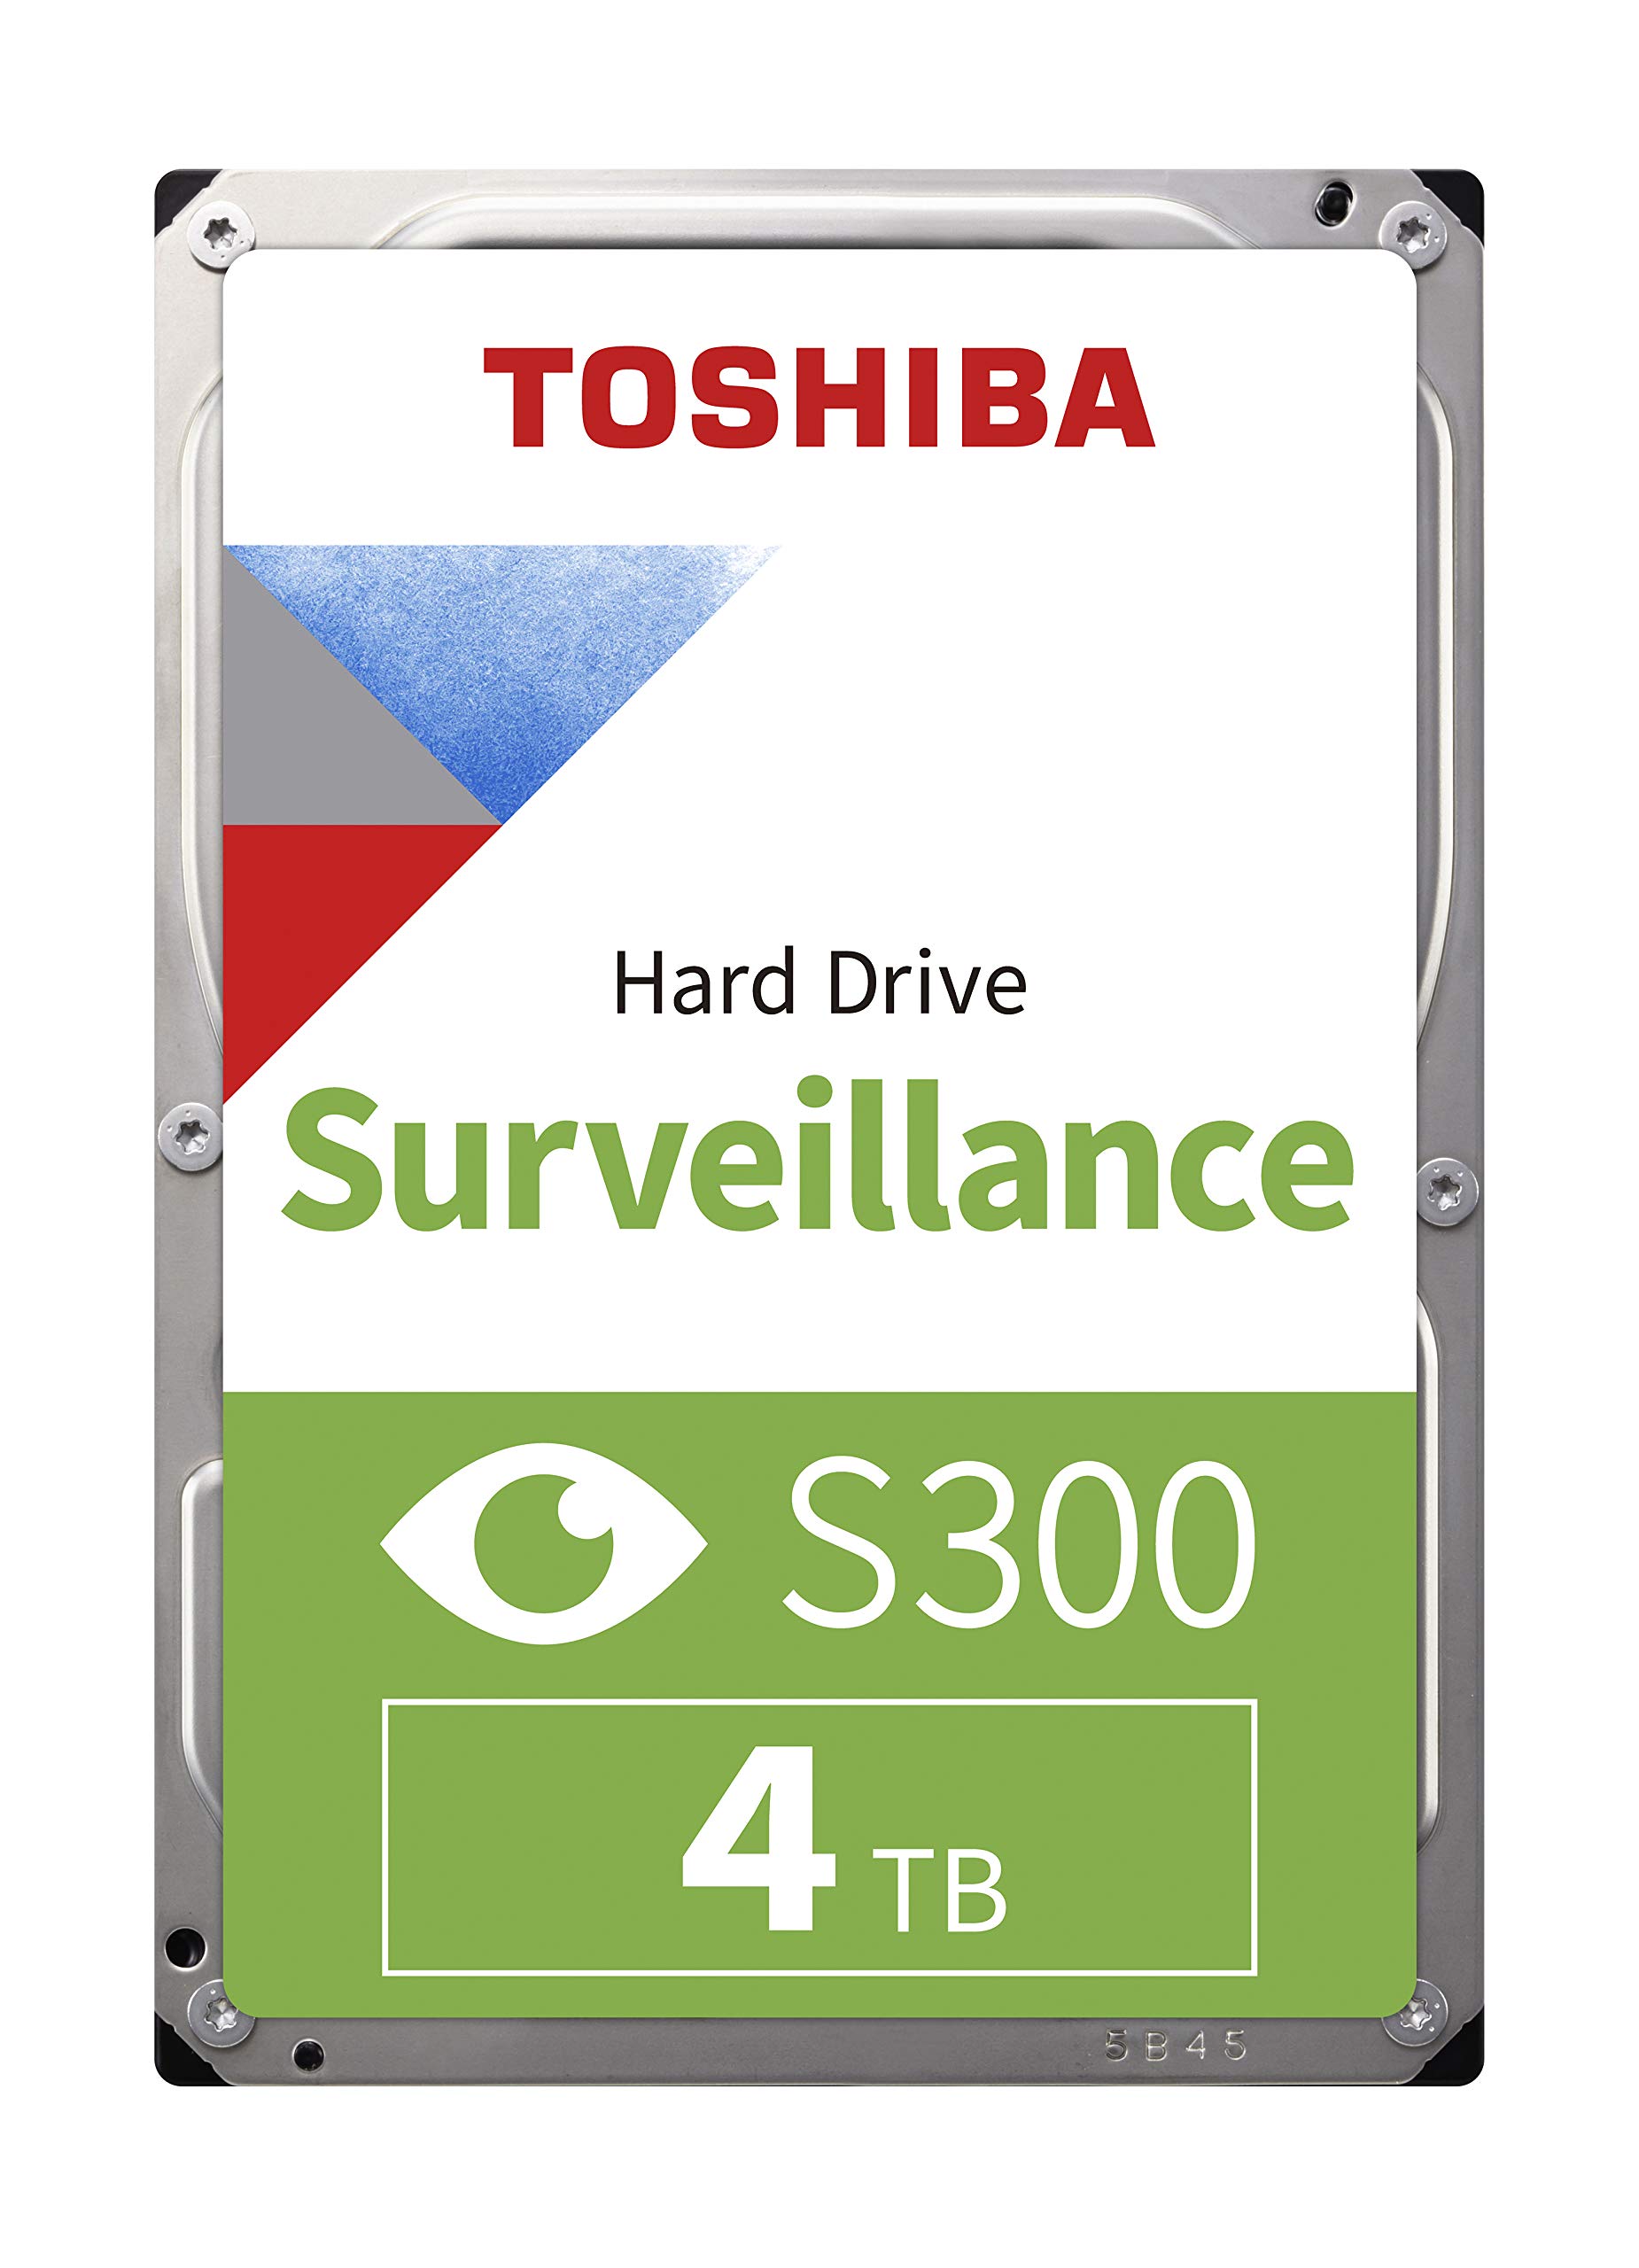 Toshiba *BULK* S300 Surv Hard Drive 4TB